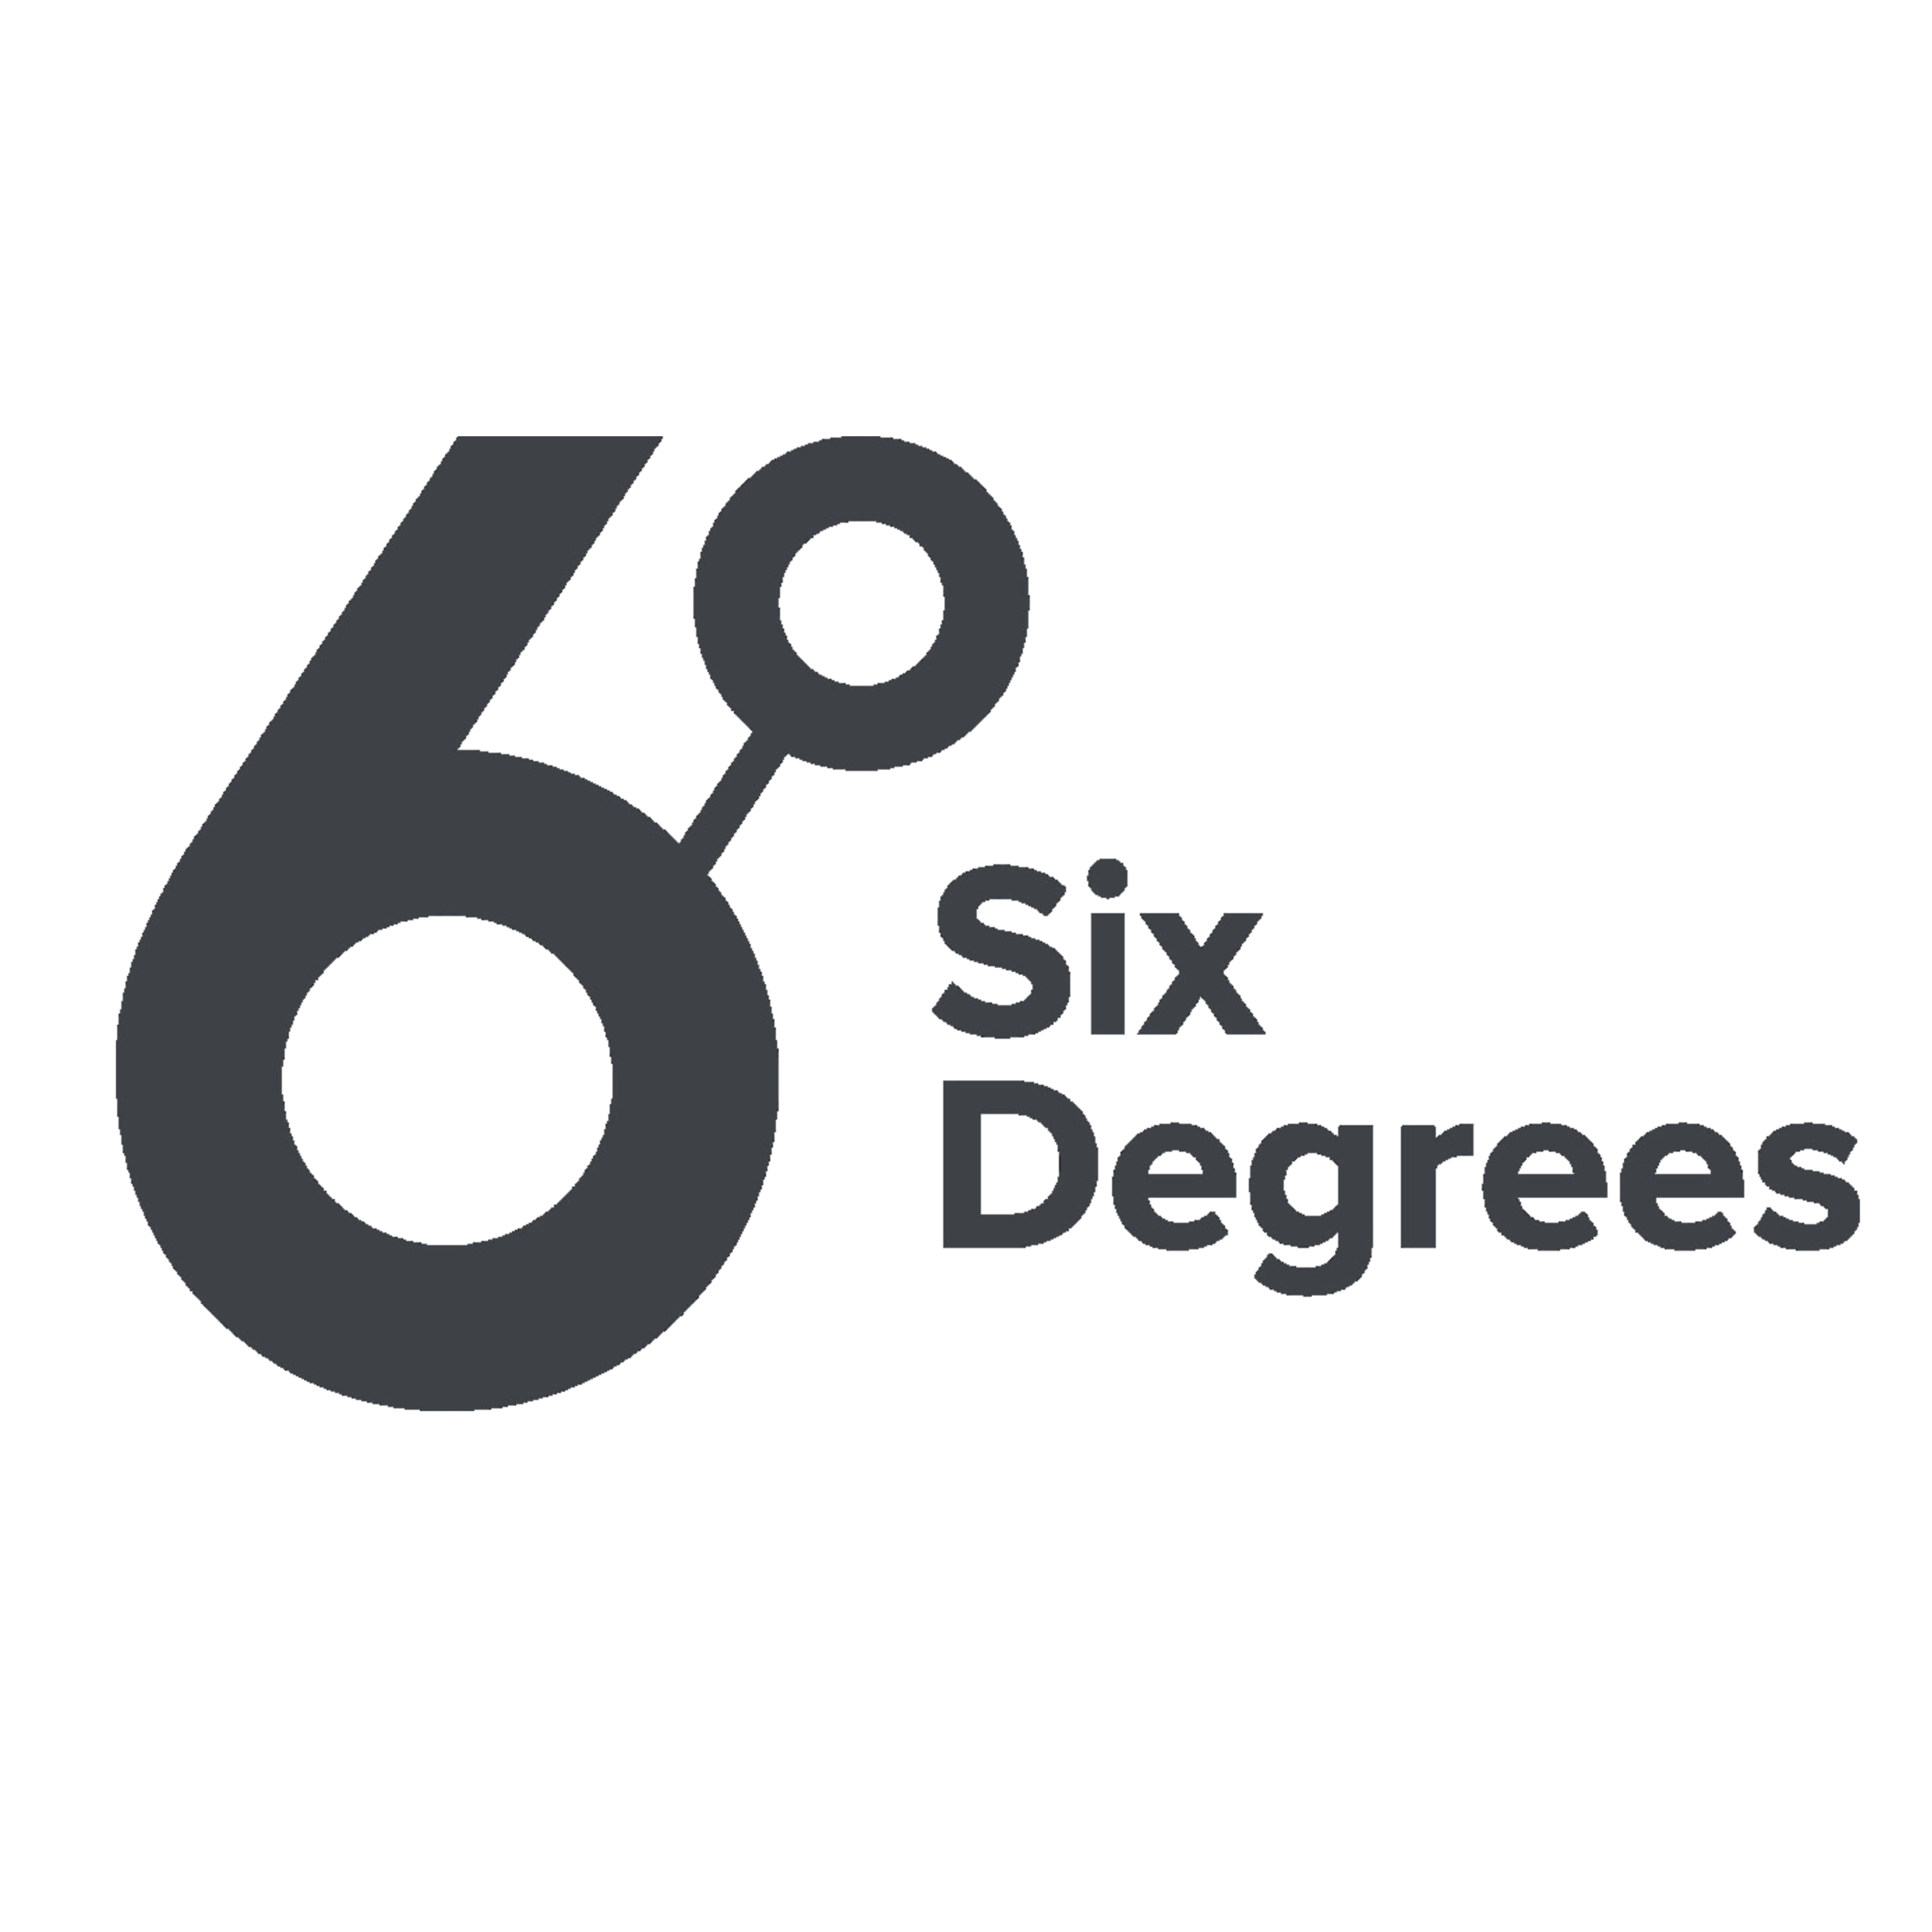 Six Degree